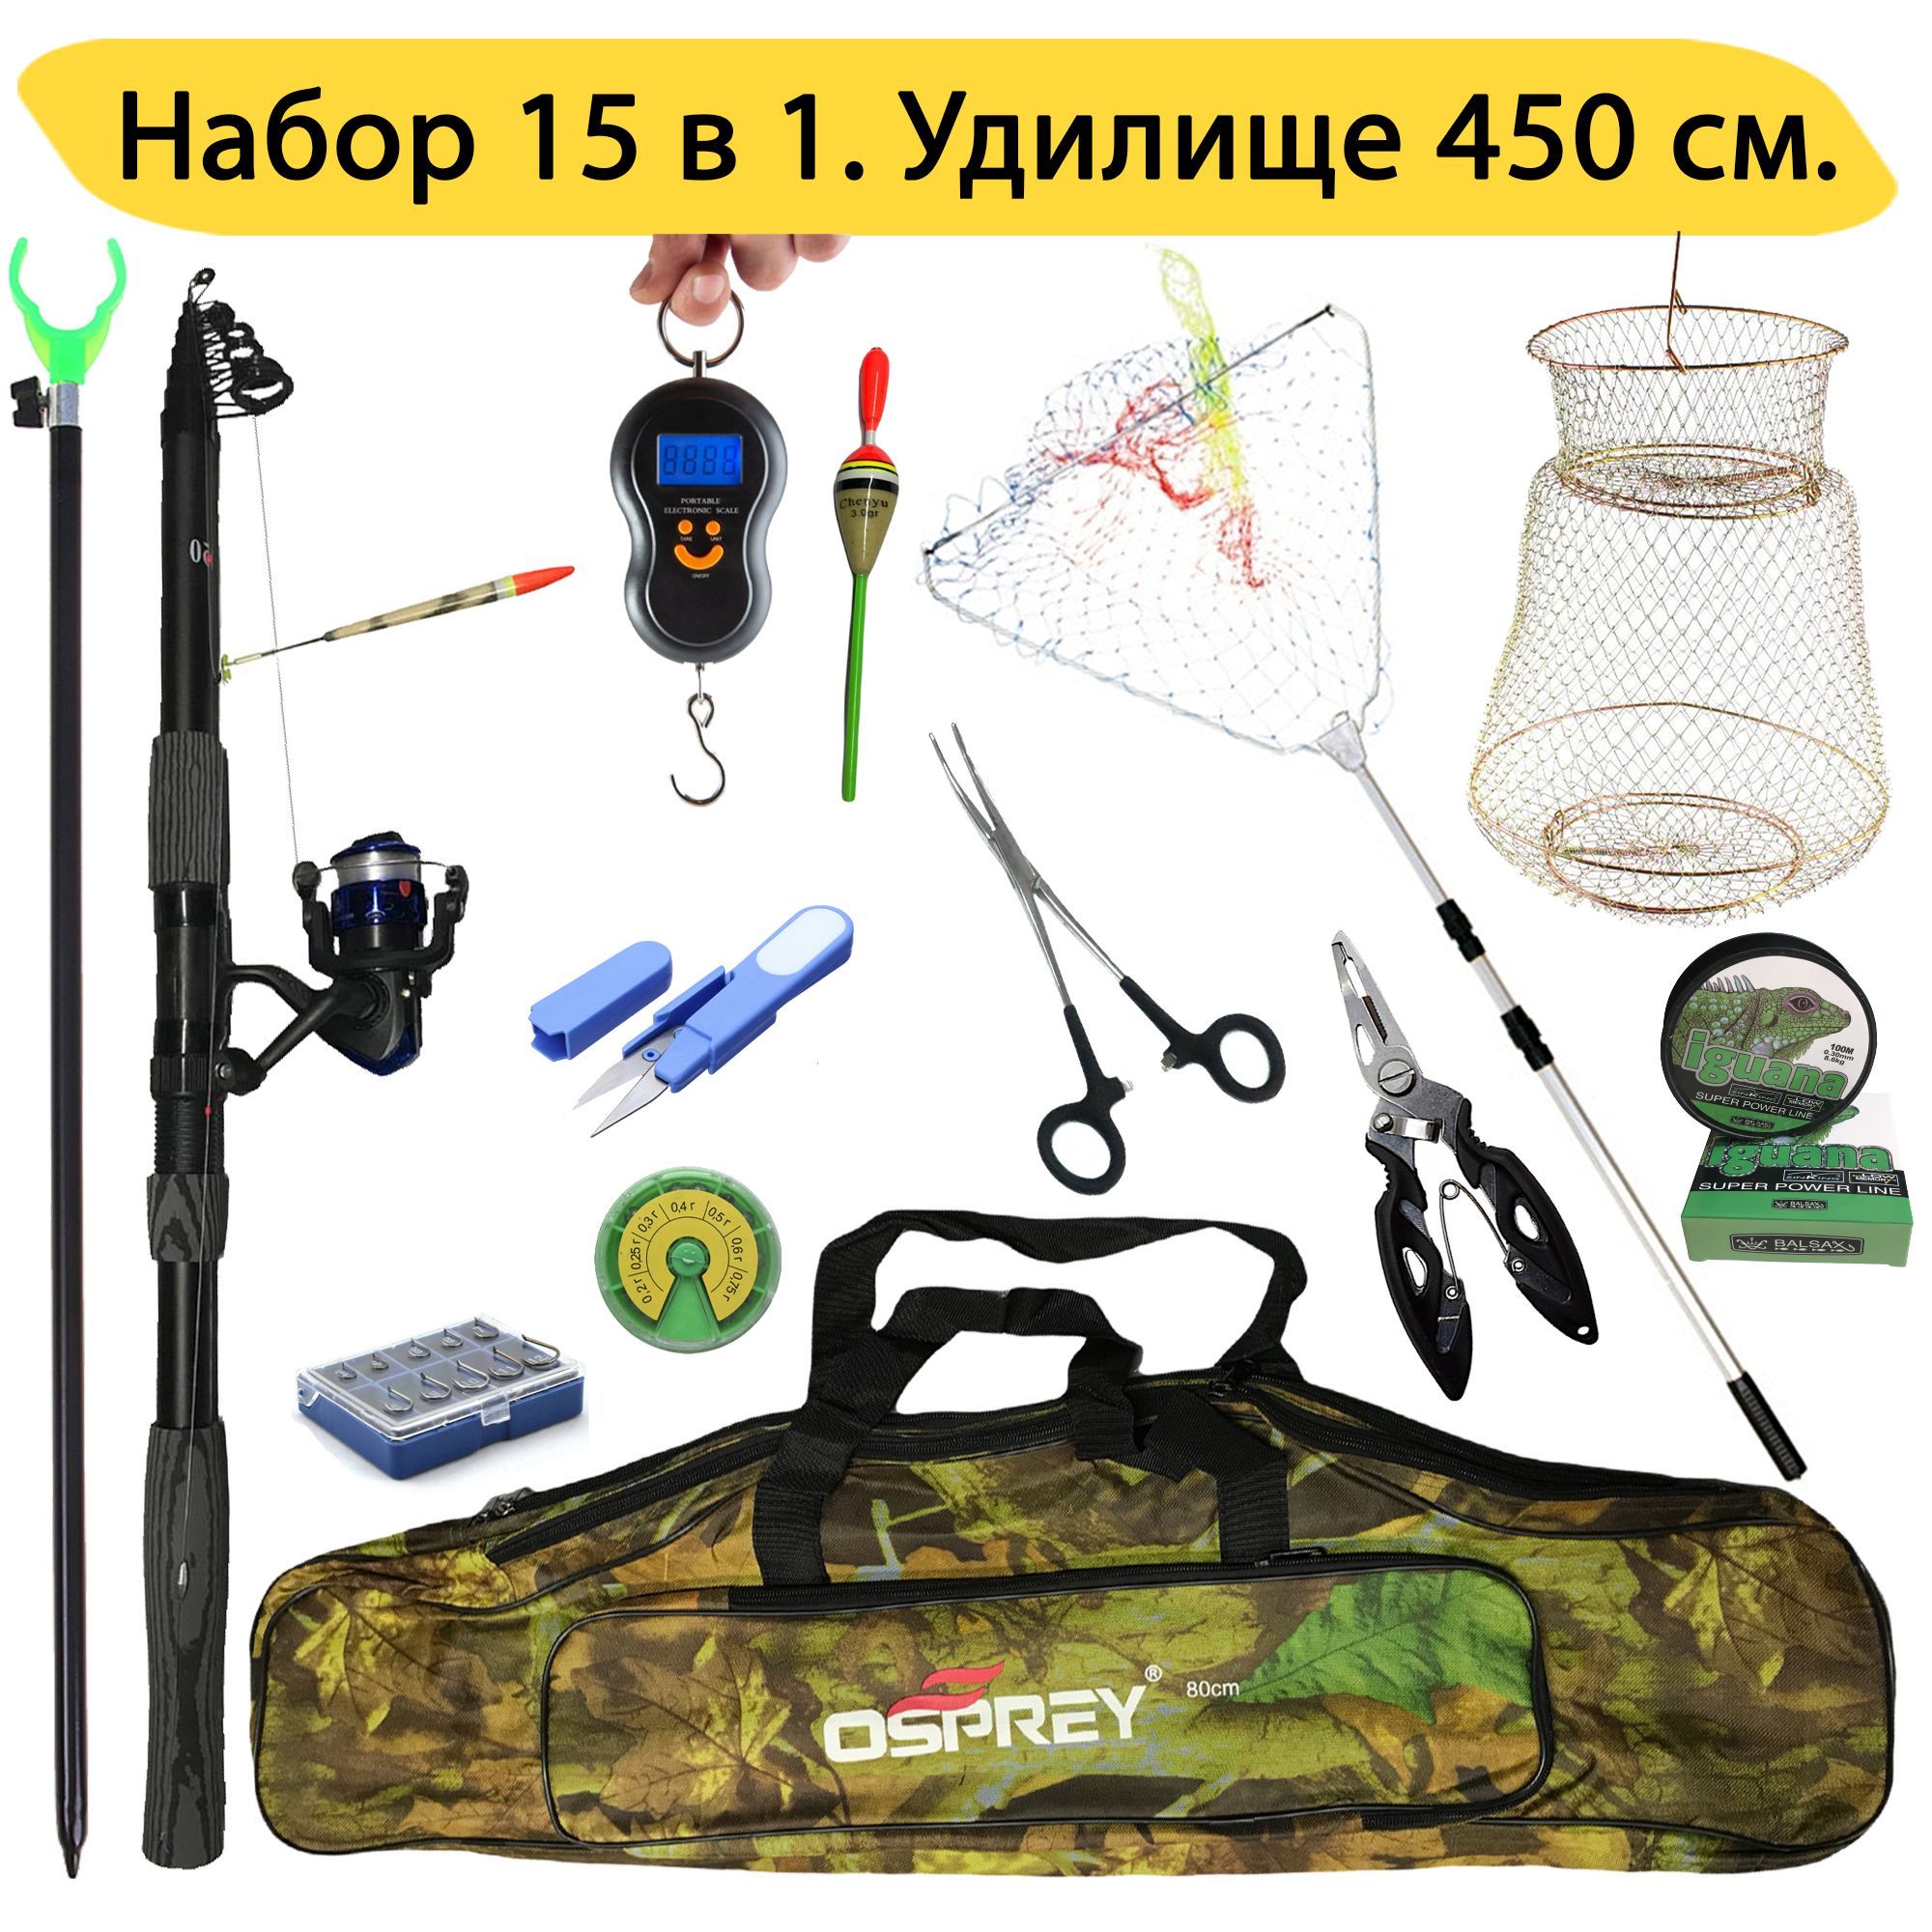 Рыболовный набор 15 в 1 с удочкой 450 см, GC-Famiscom